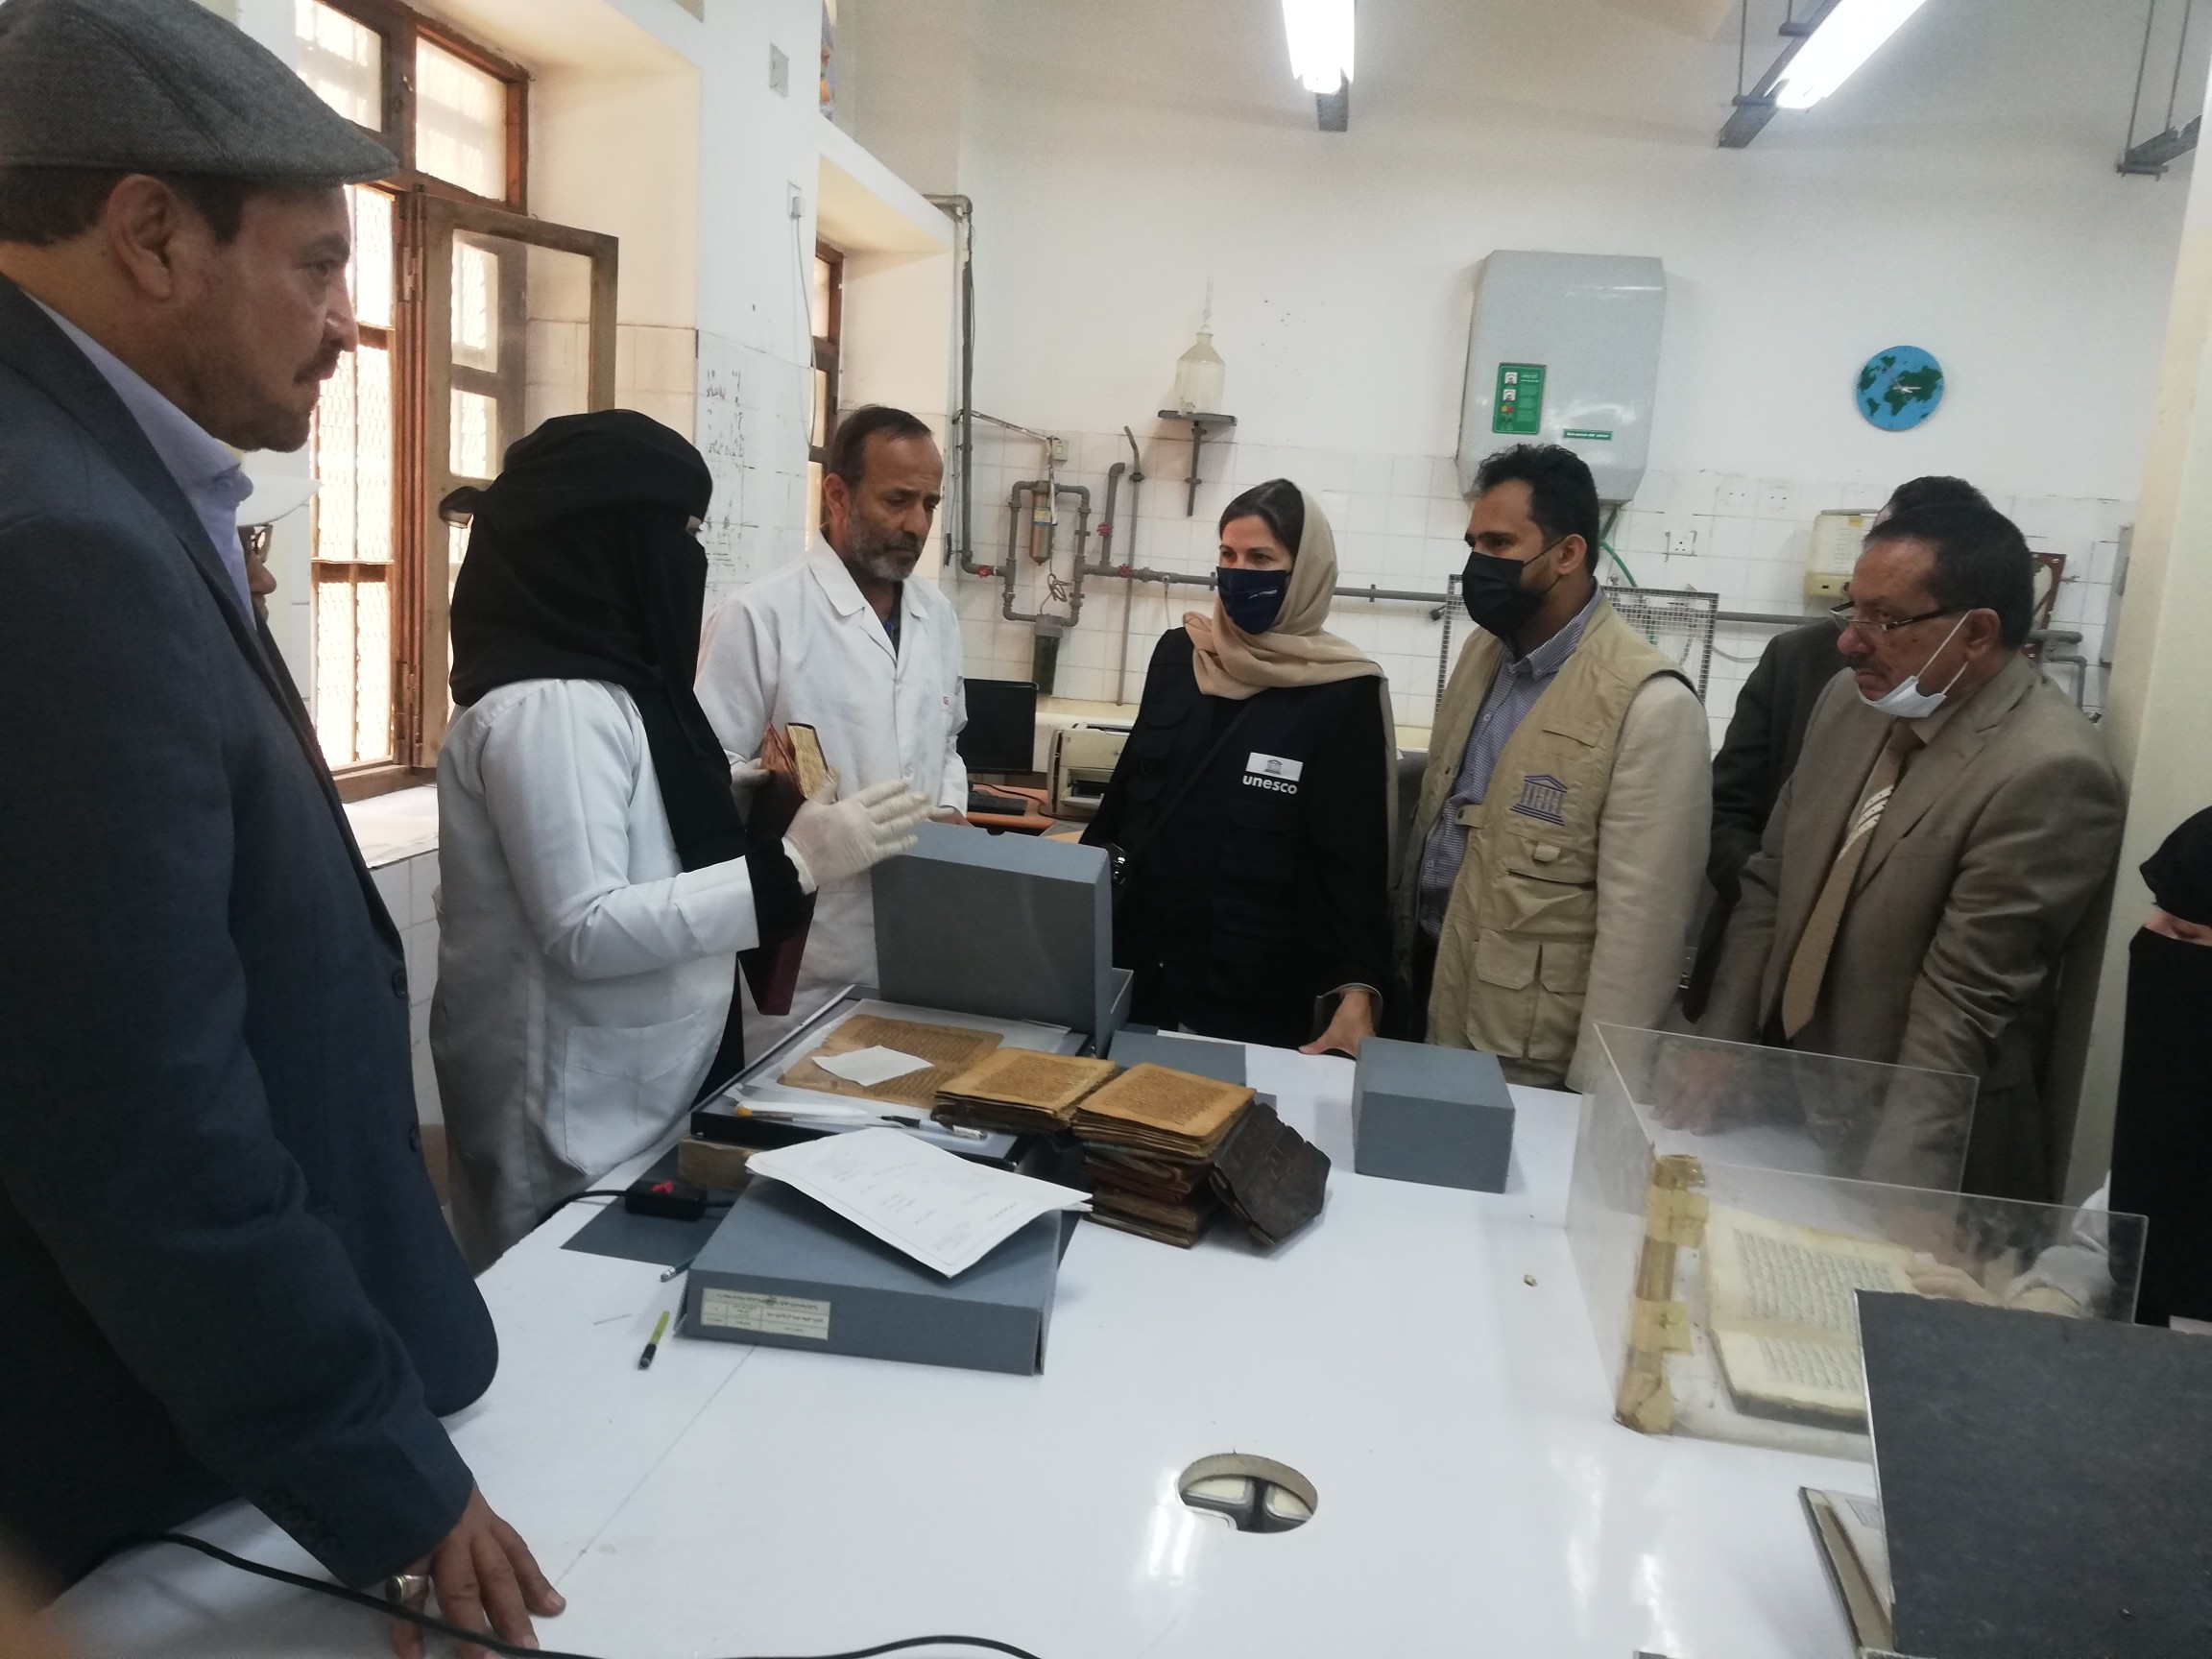 مديرة مكتب اليونسكو تزور صنعاء القديمة و دار المخطوطات